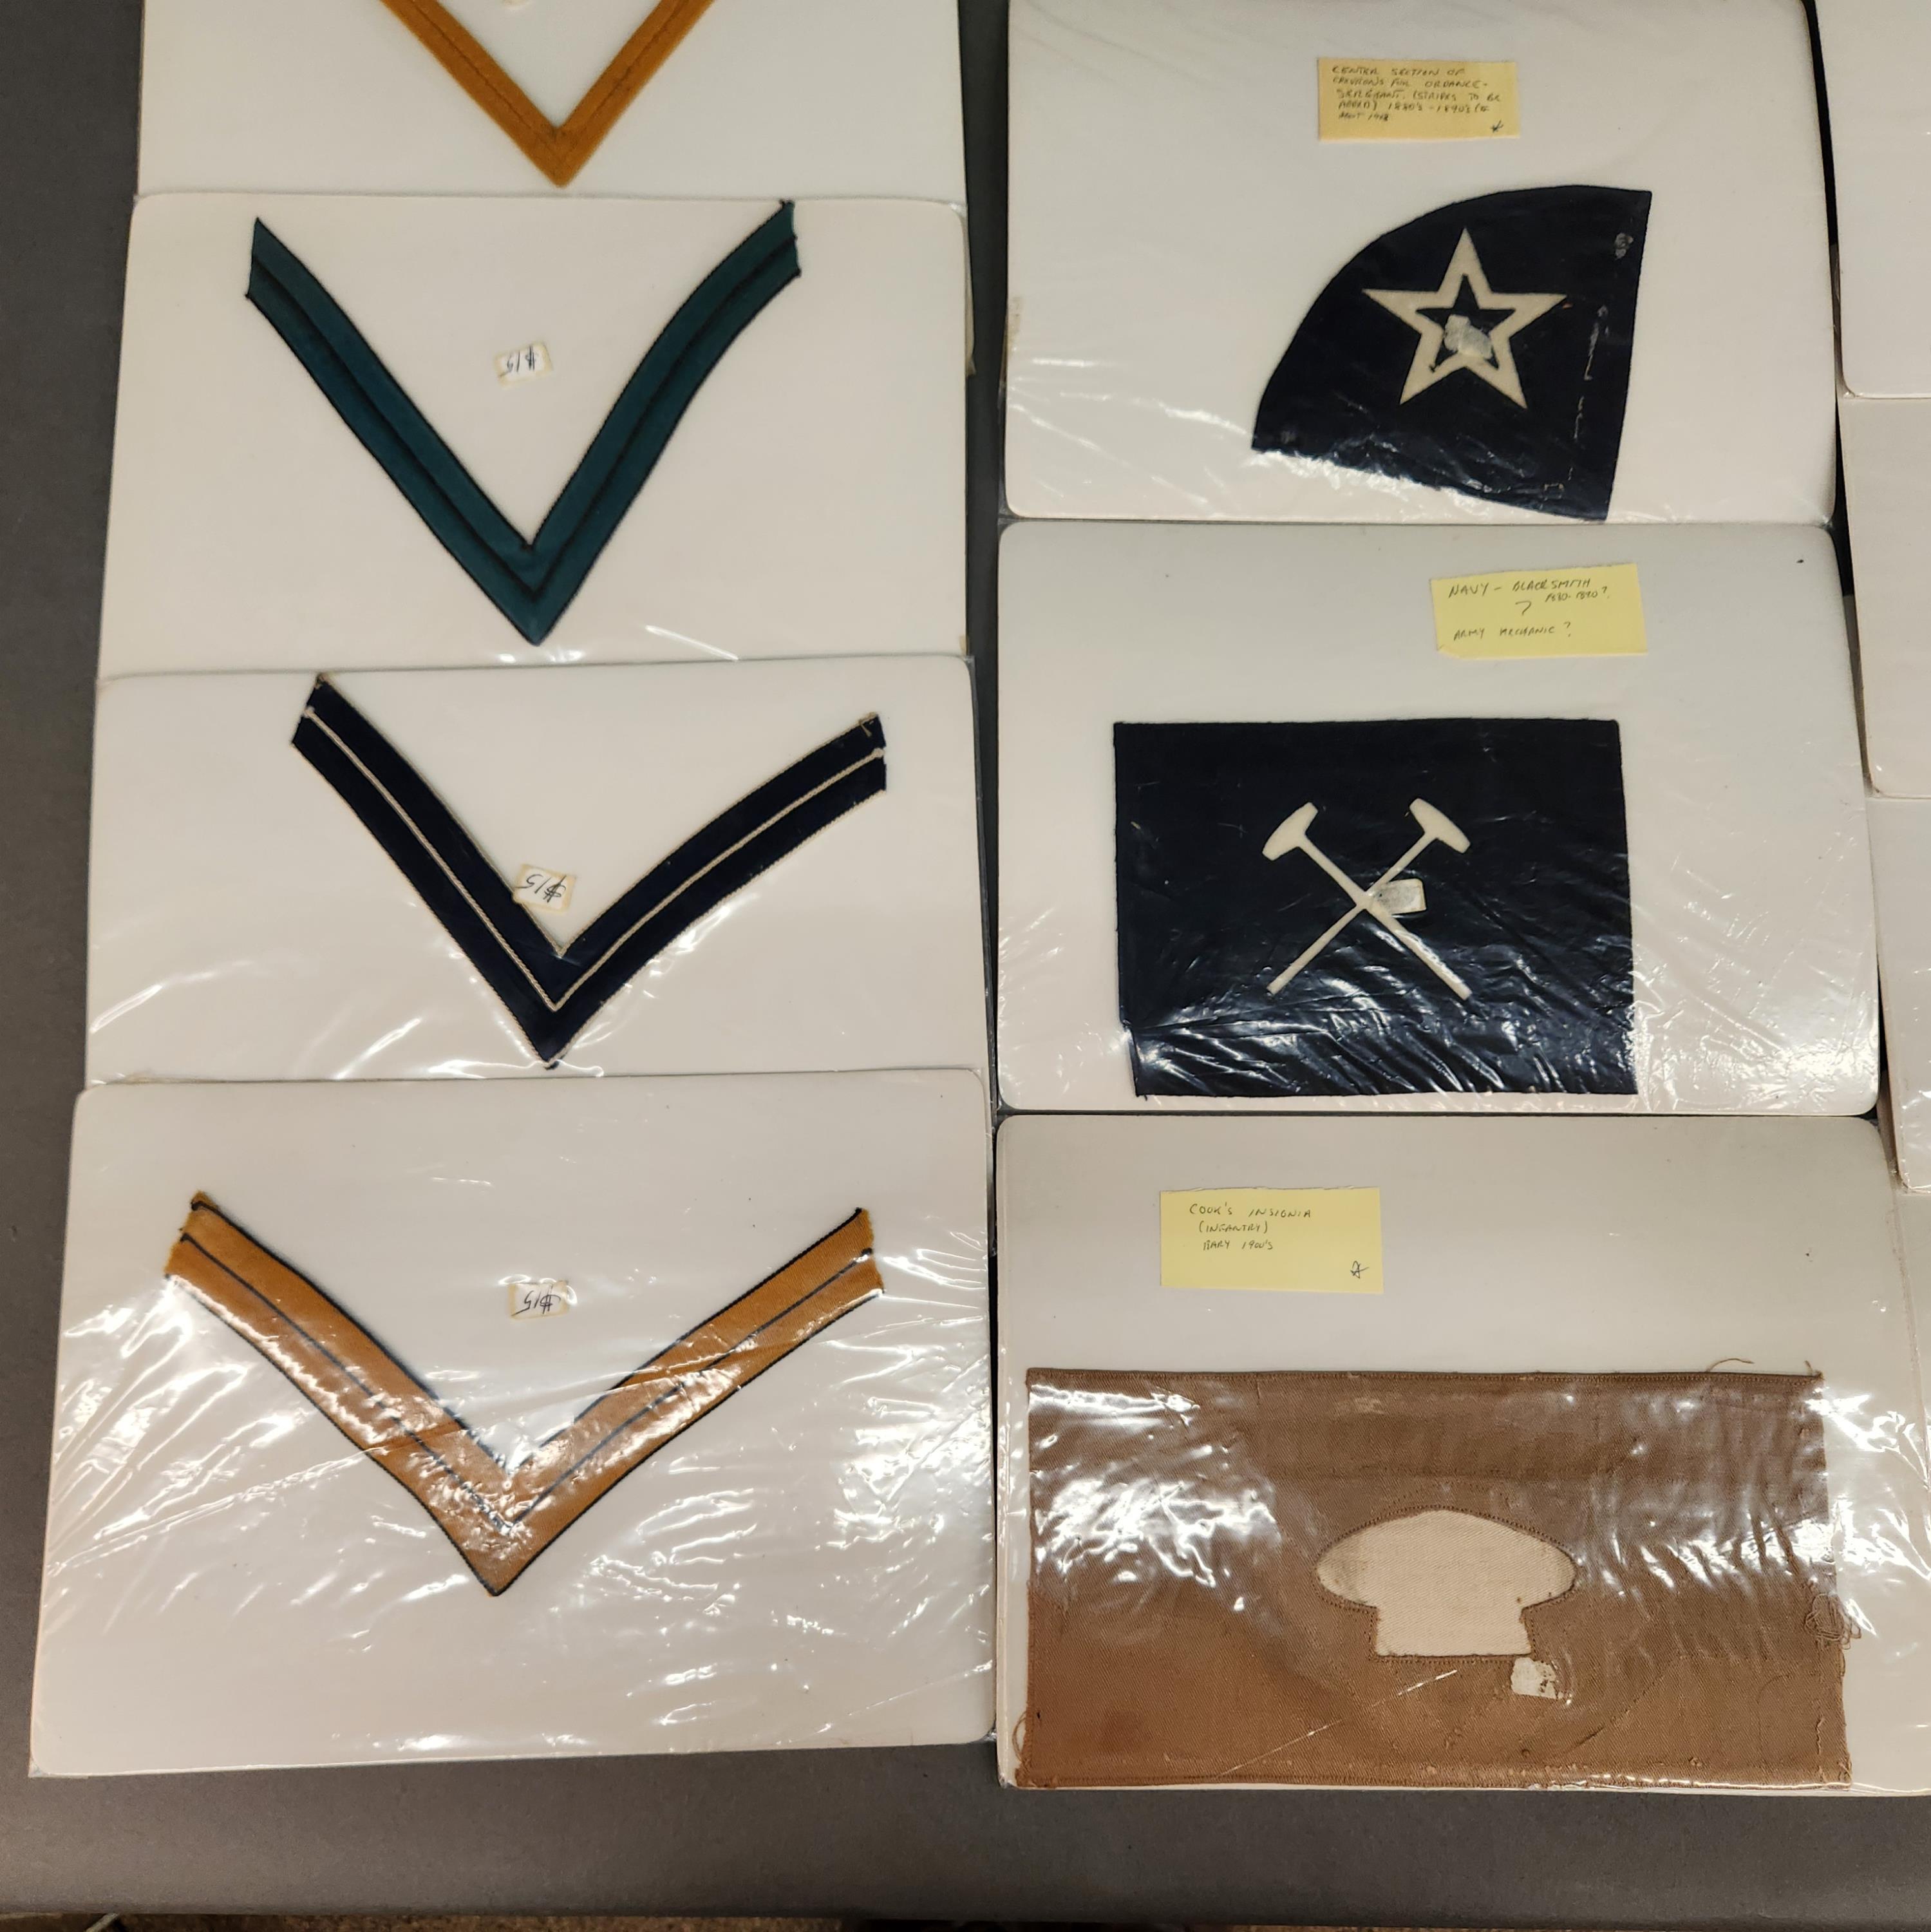 19th-20th Century U.S. Army uniform insignia